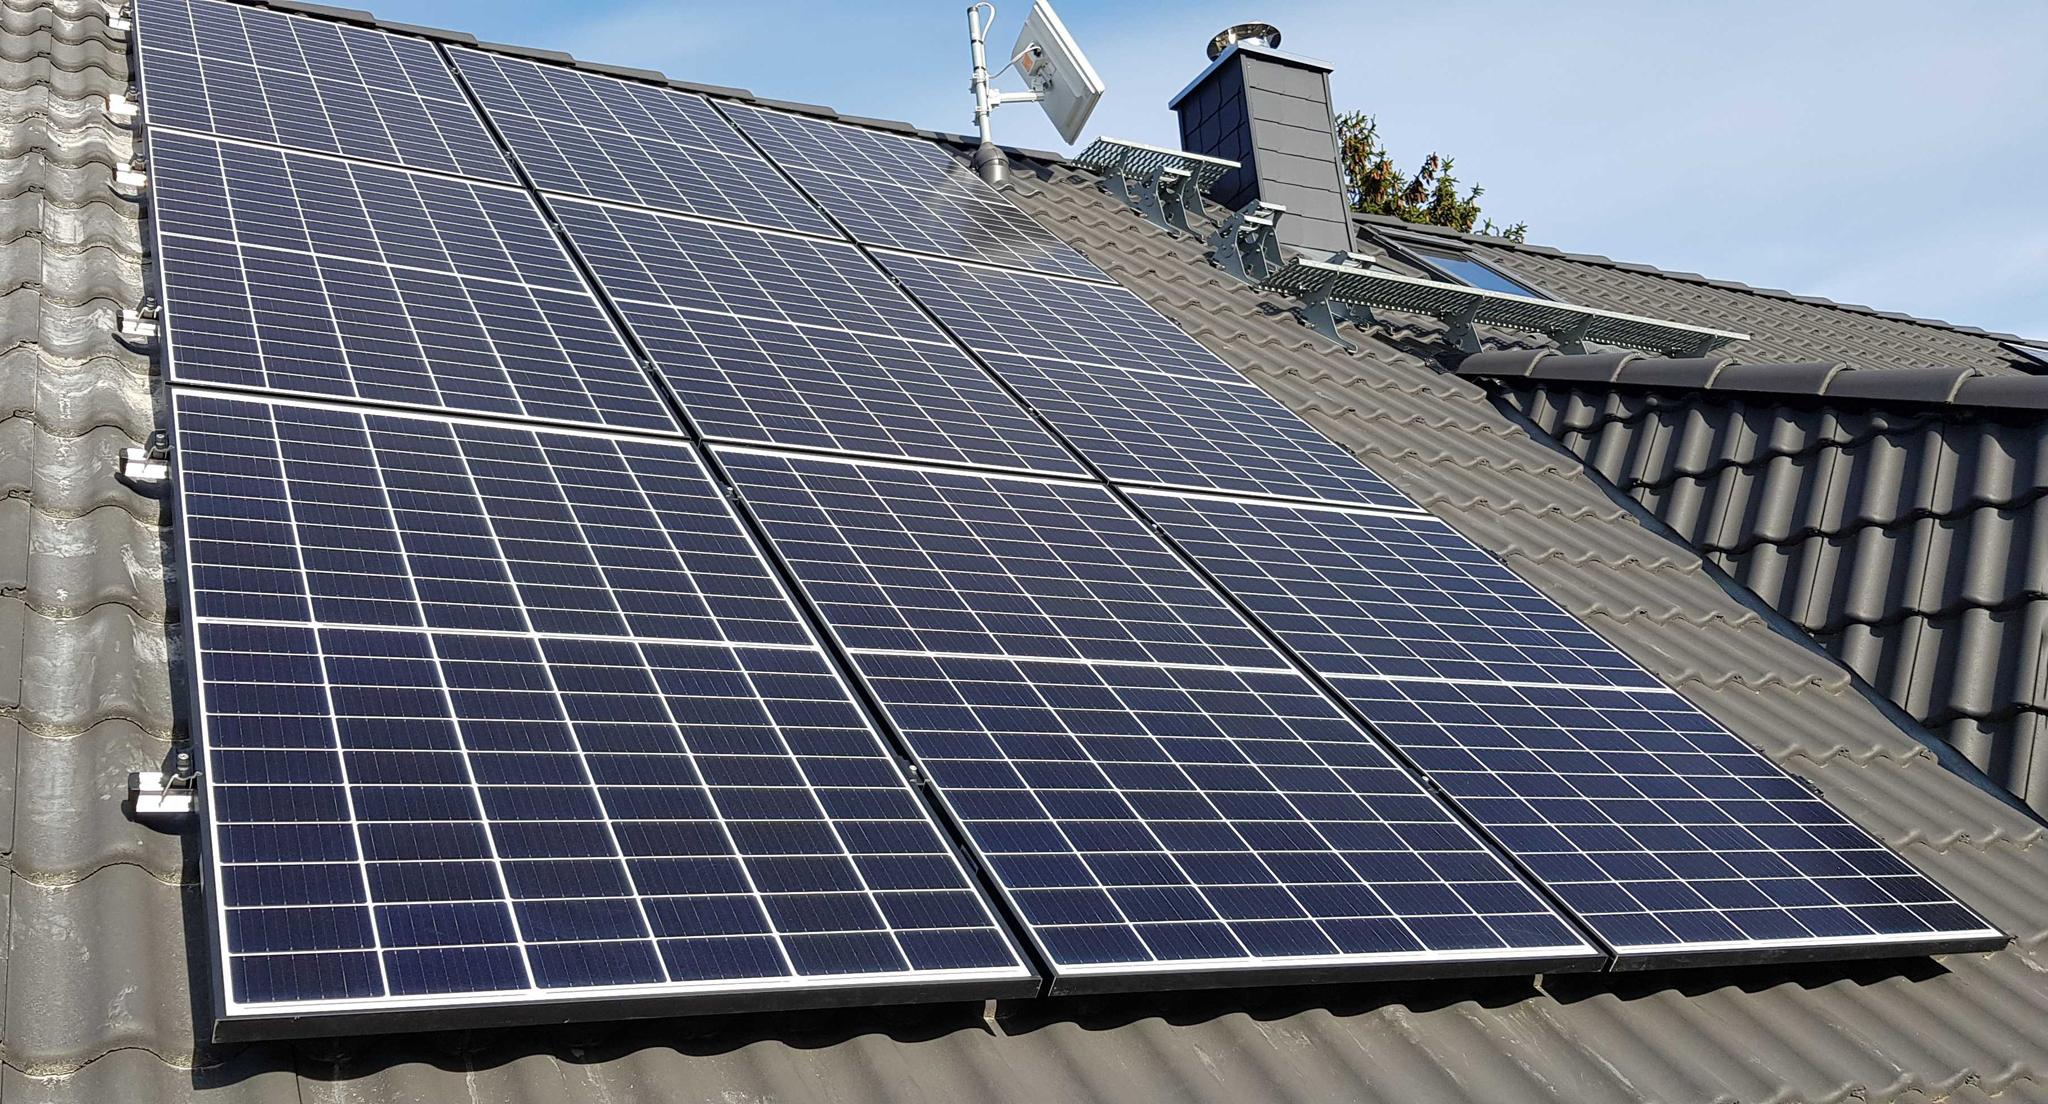 Solarmodule auf einem Dach - Solaranlagen-Effizienz mit zolar